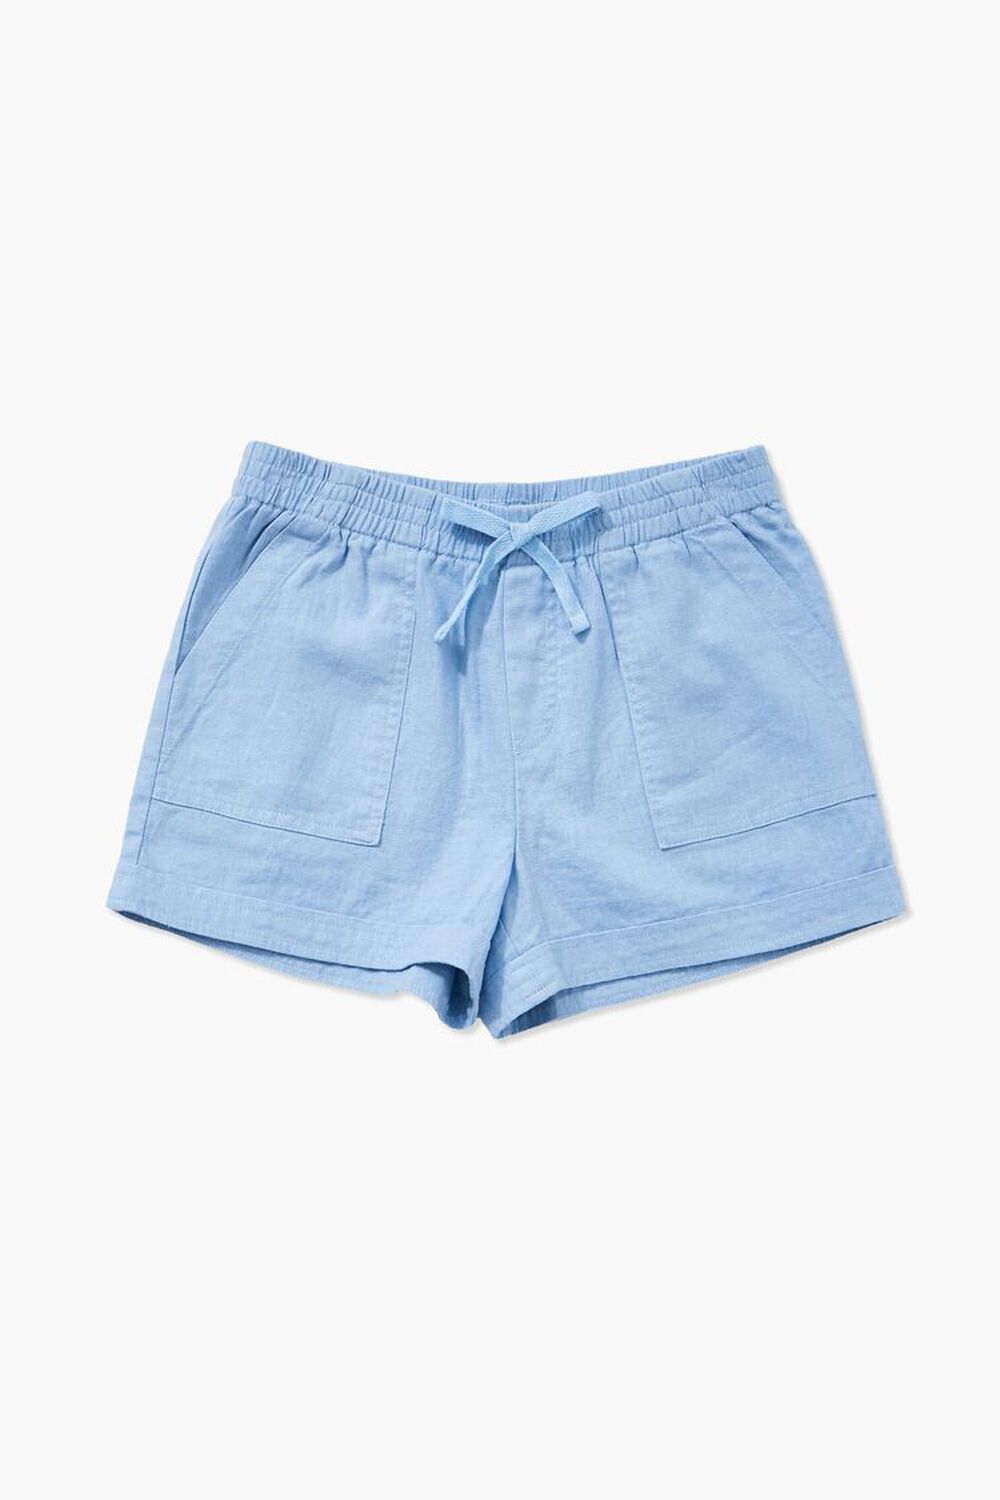 BLUE Girls Linen-Blend Shorts (Kids), image 3